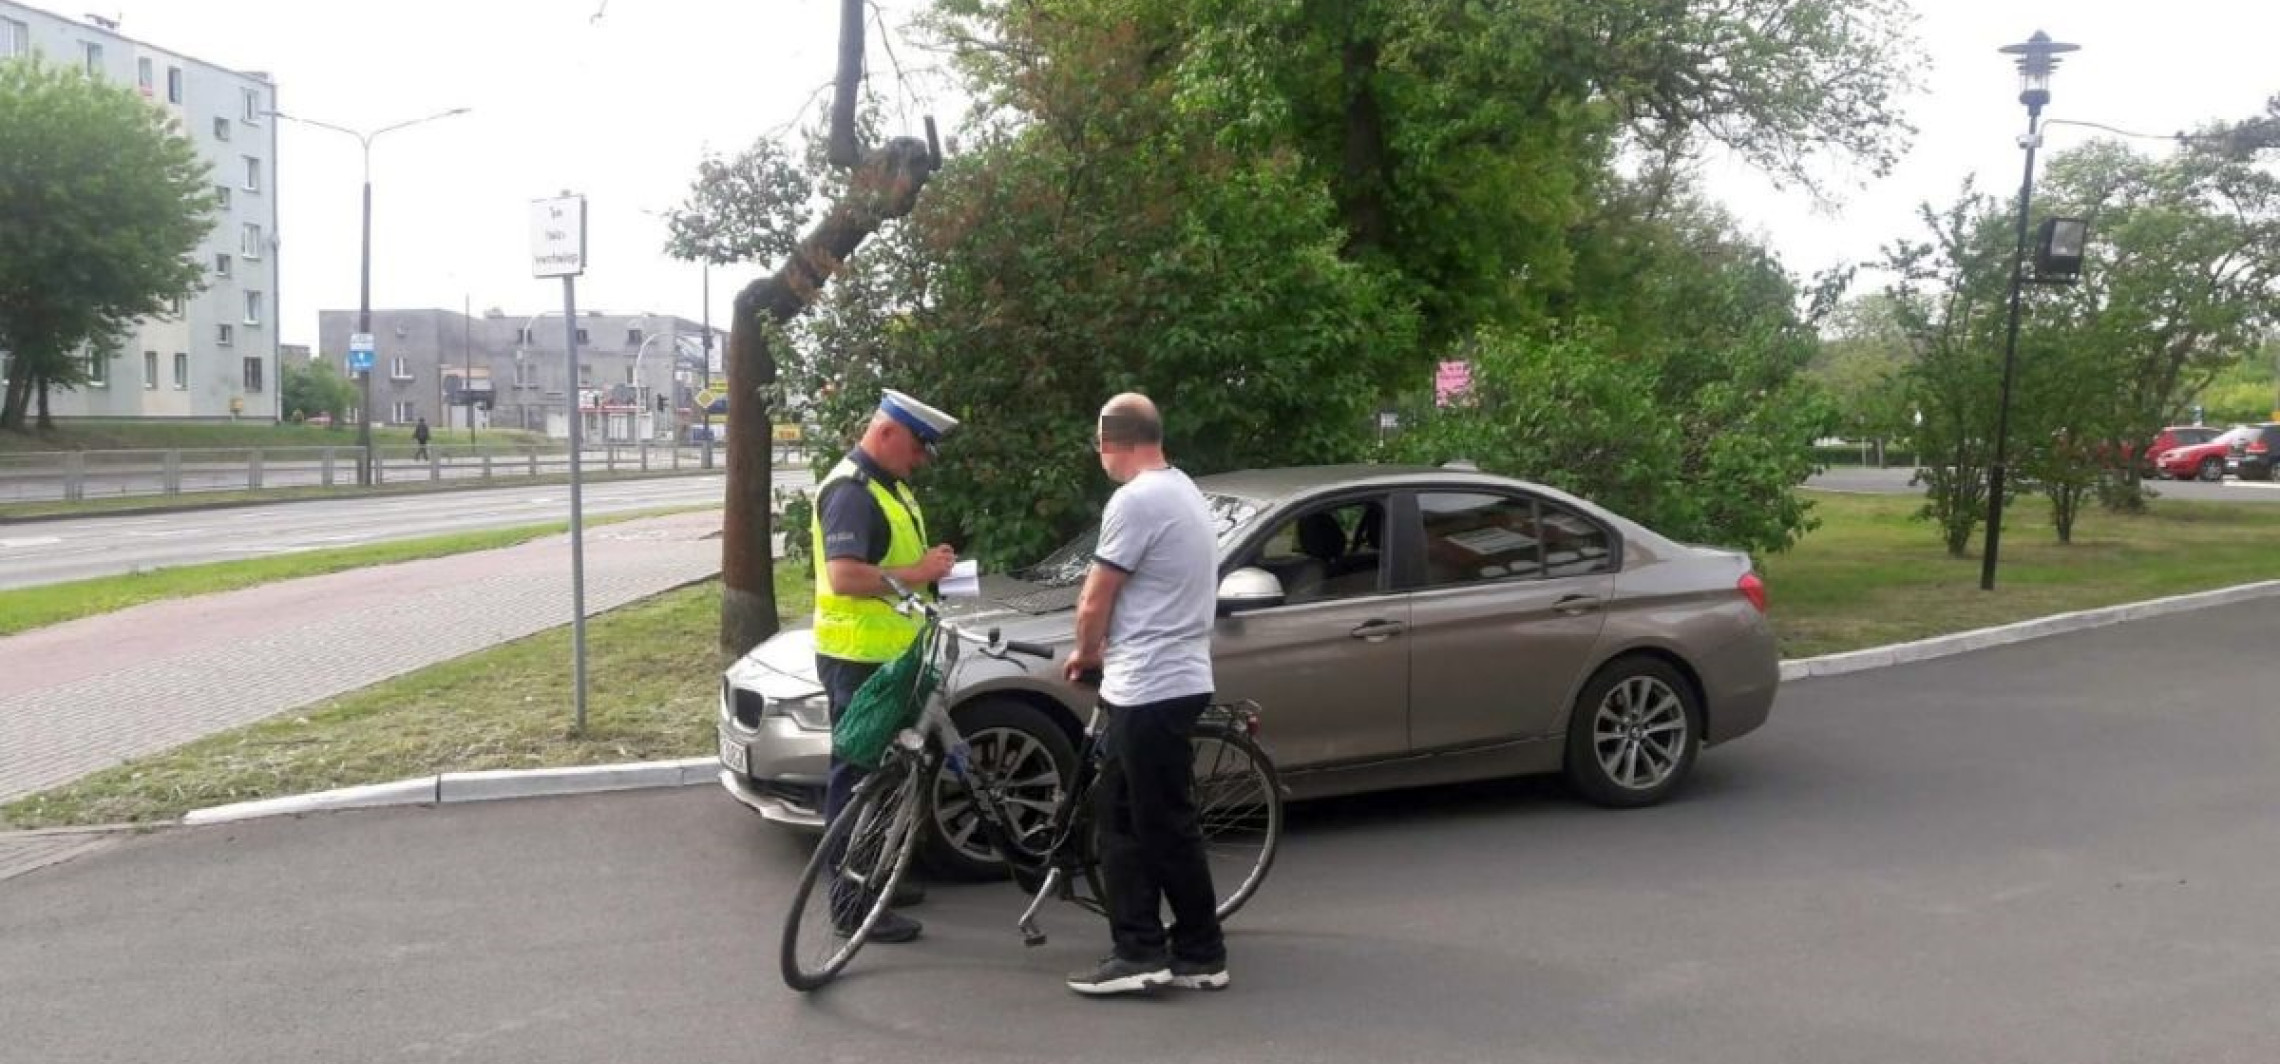 Inowrocław - Policja przyjrzała się rowerzystom. Oto efekty